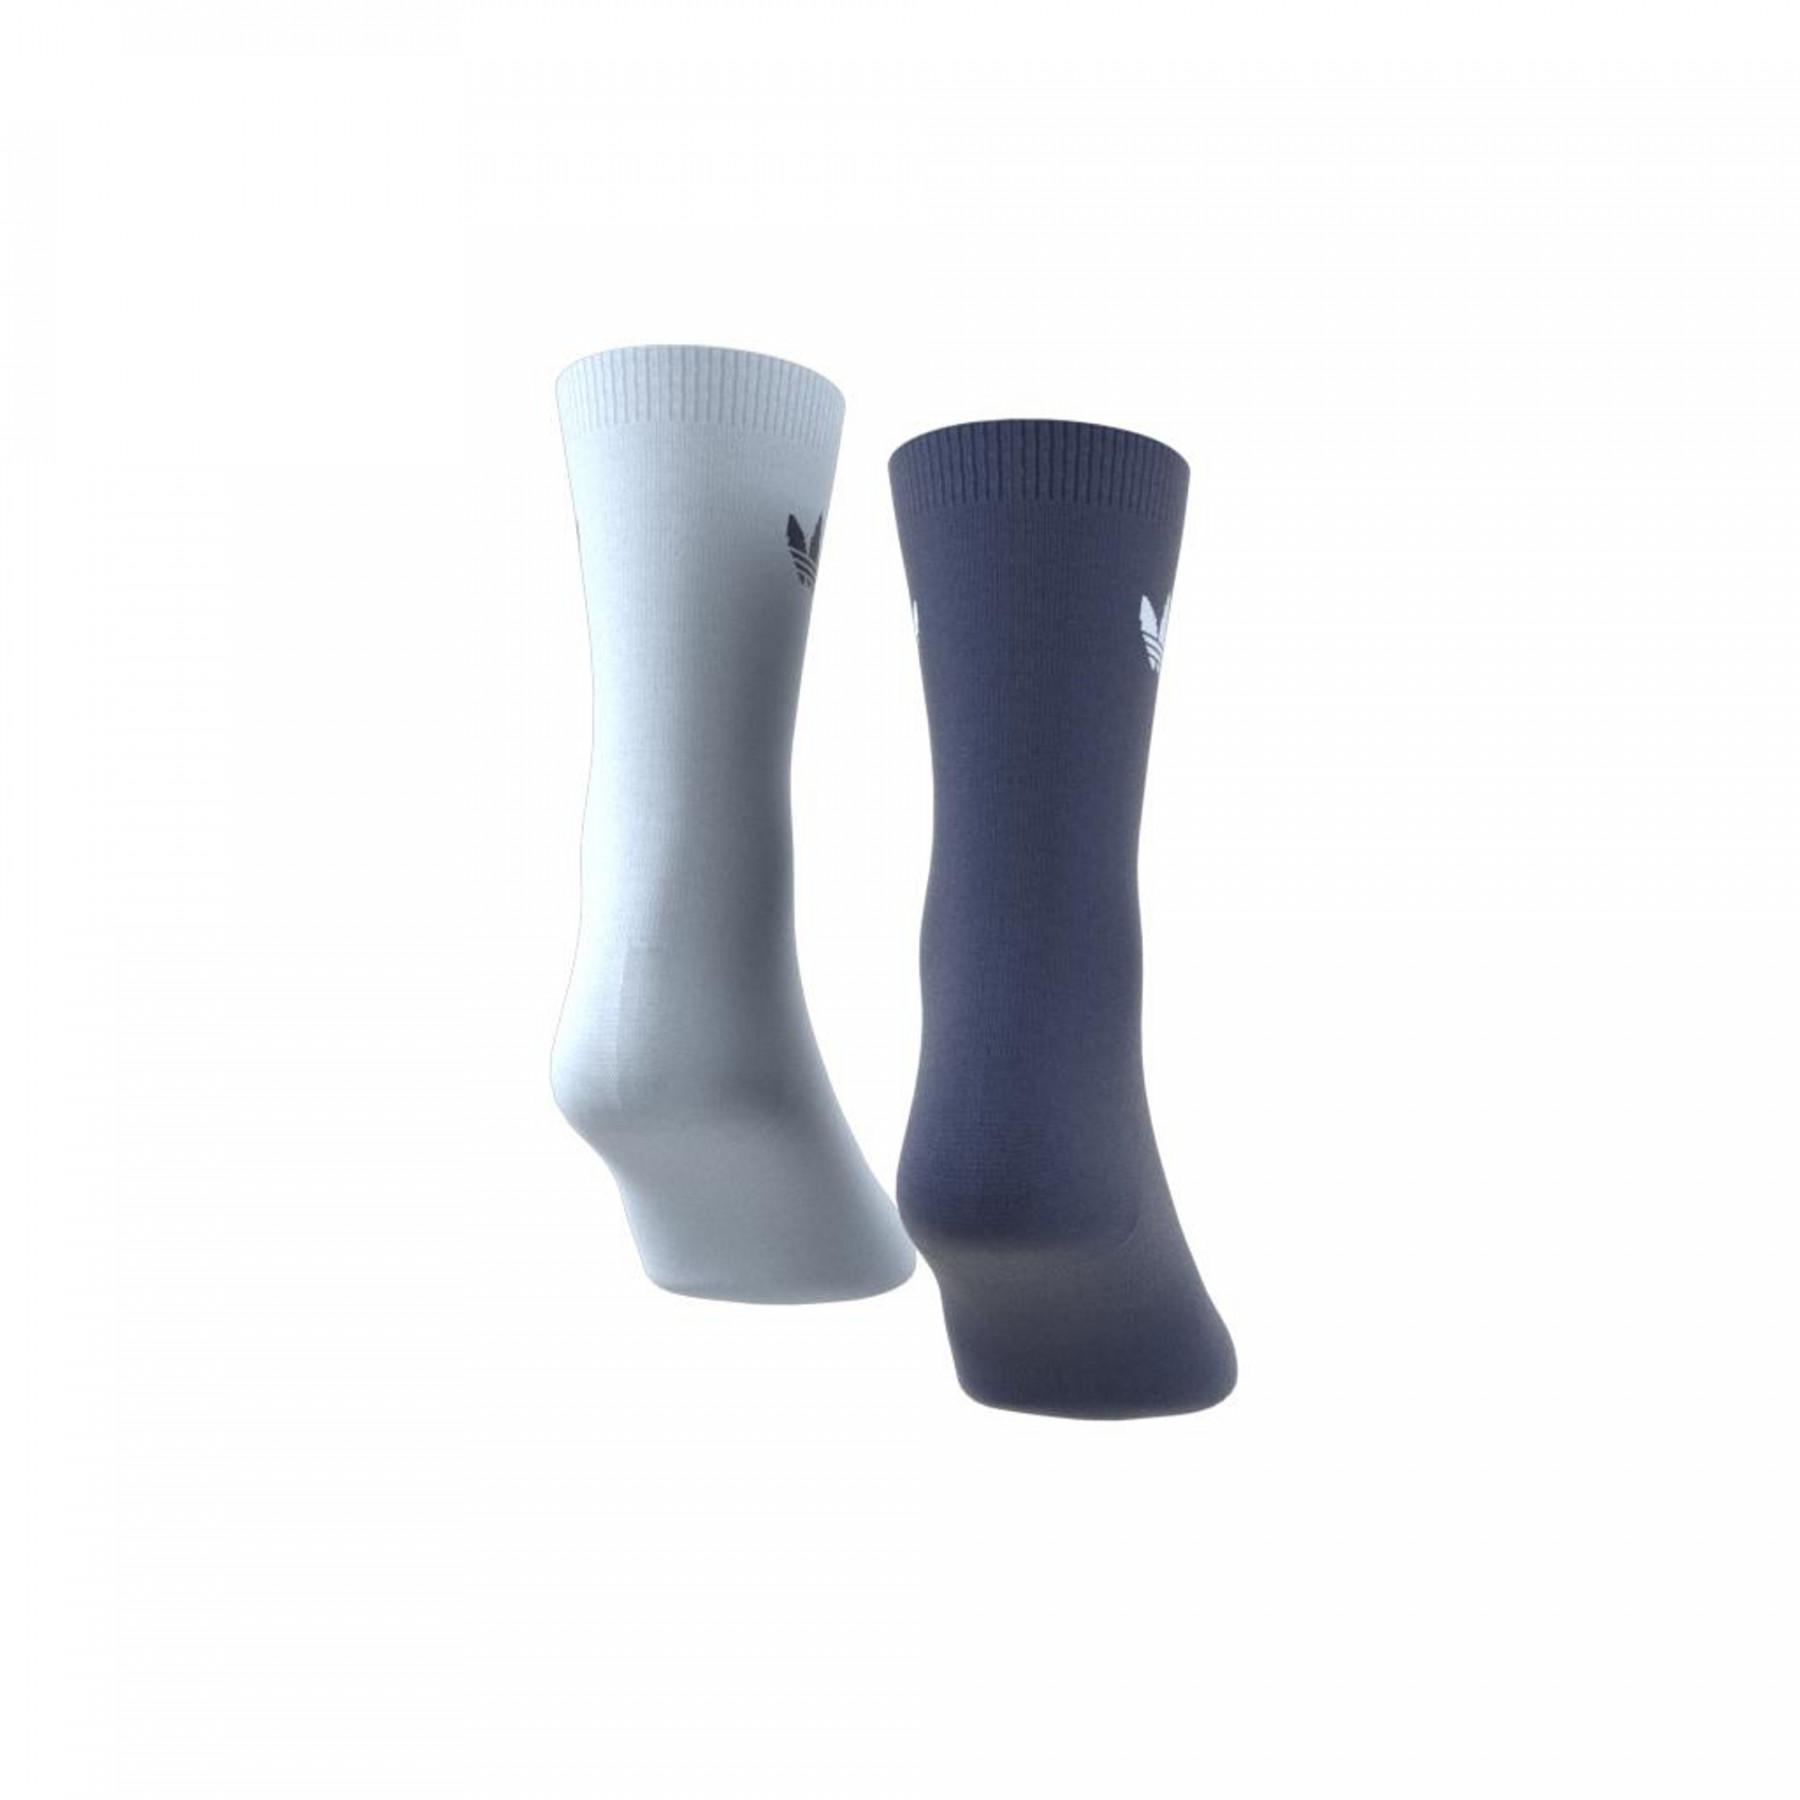 Socken adidas originals mi-mollet Trefoil Thin (2 paires)